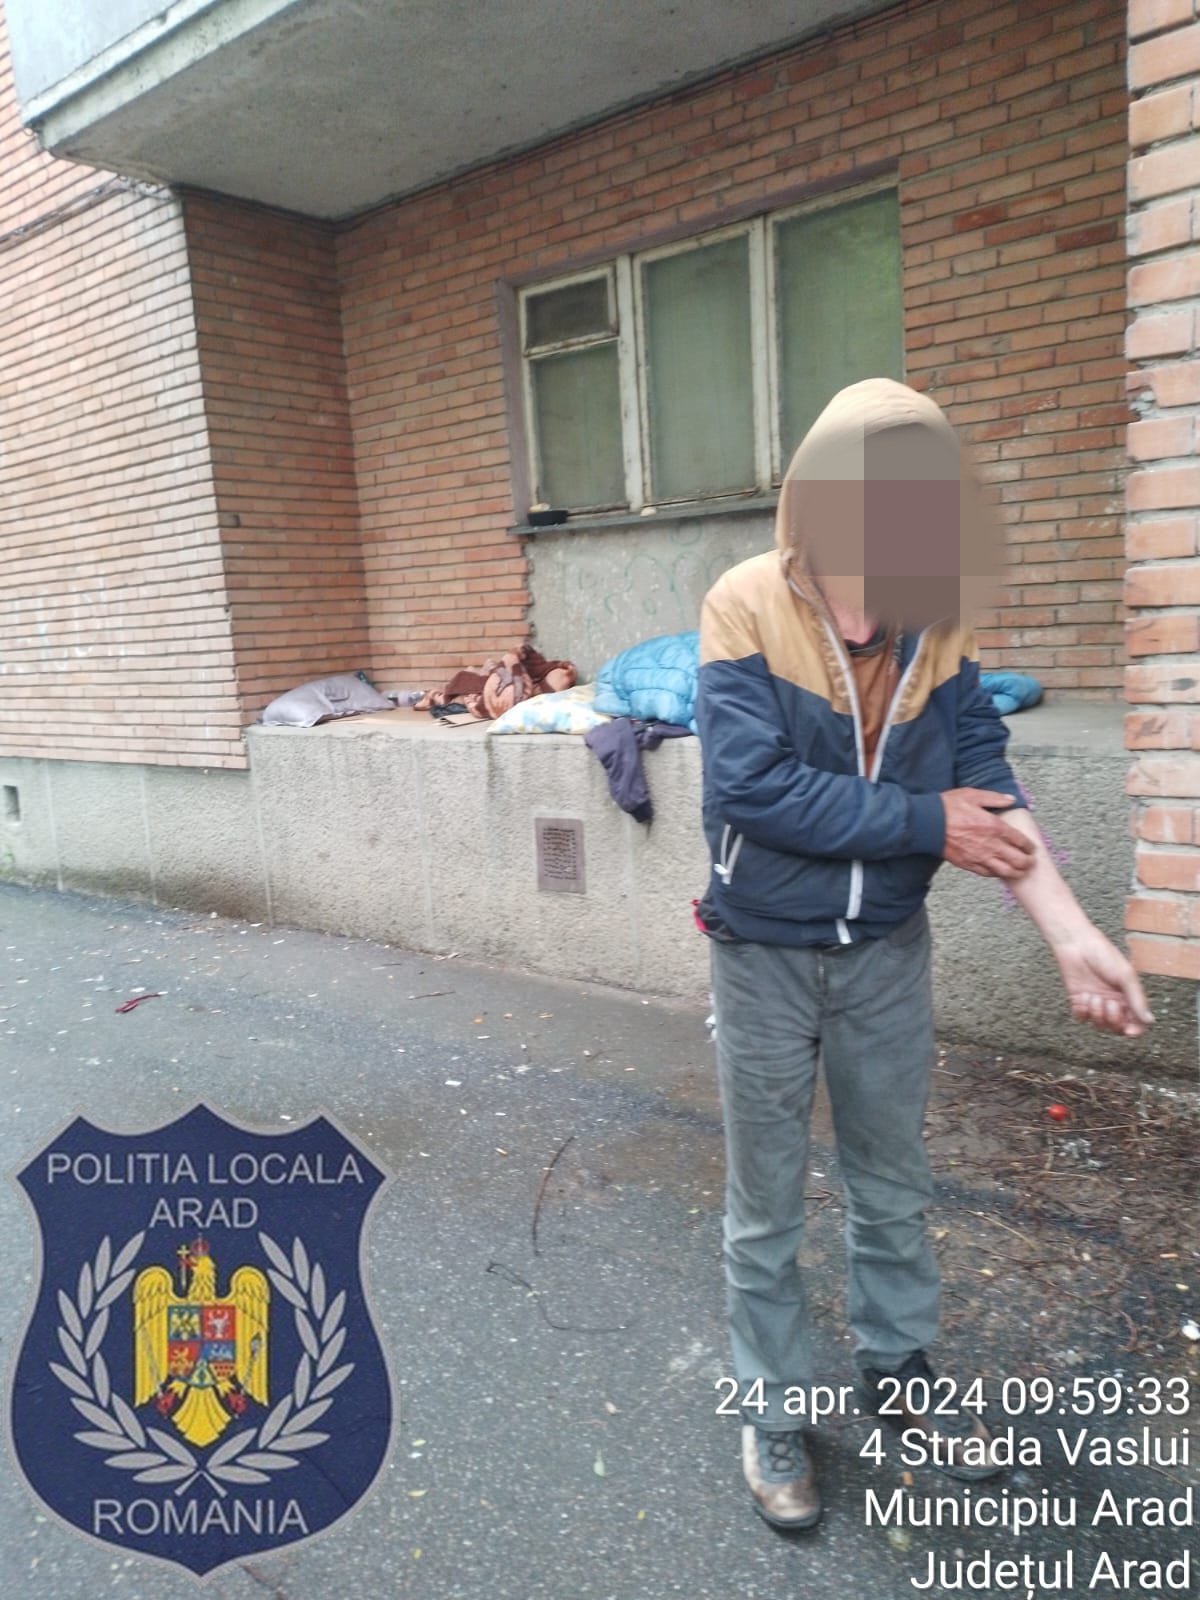 (FOTO) Polițiștii locali au amendat boschetarii